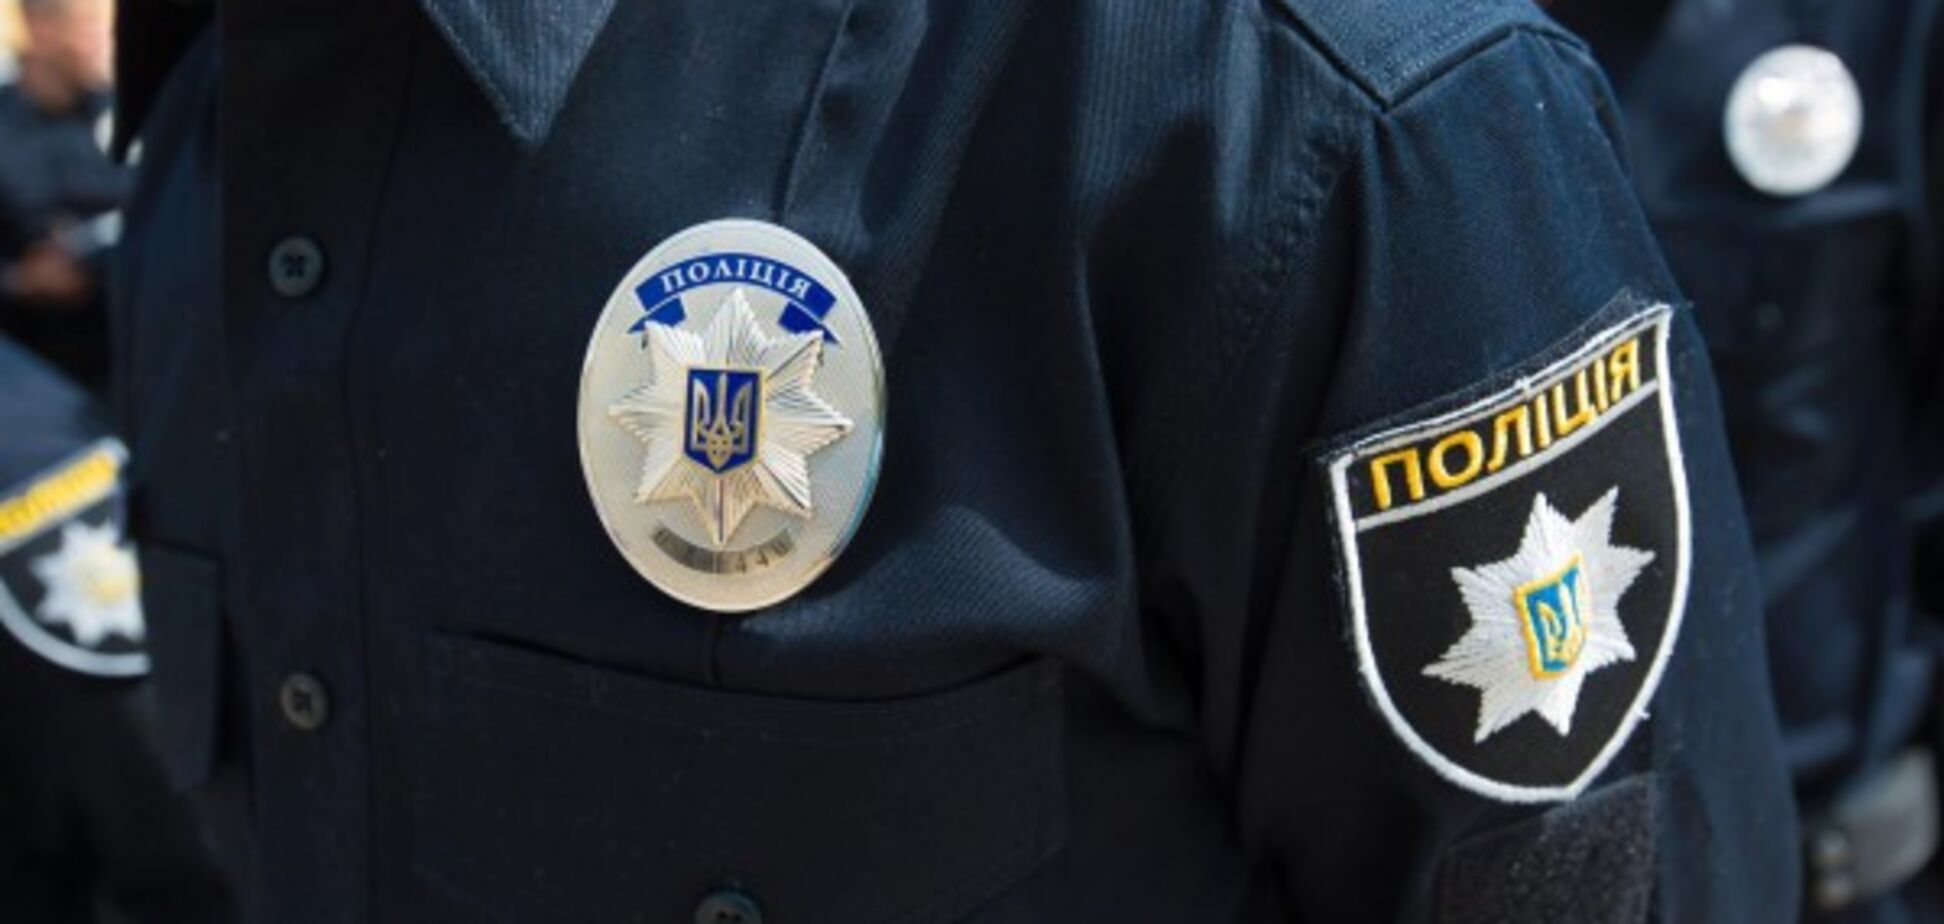 Со связанными руками и ногами: в Киеве нашли труп мужчины